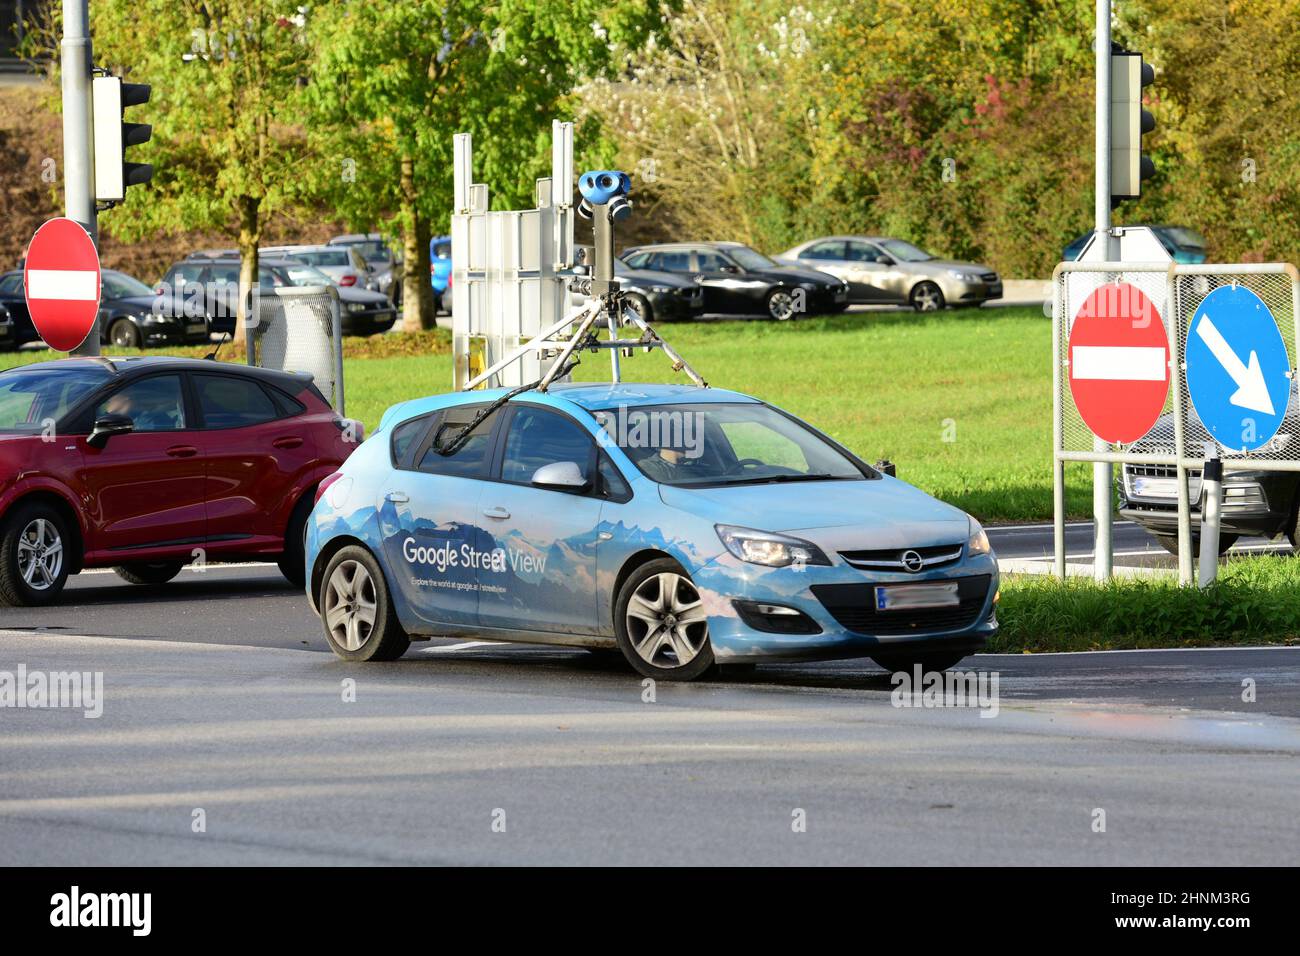 Ein Fahrzeug von Google Street View in der Näheder Westautobahn in Steyrermühl, Oberösterreich, Österreich, Europa - A Google Street View vehicle near the motorway A1 in Steyrermühl, Upper Austria, Austria, Europe - Stock Photo